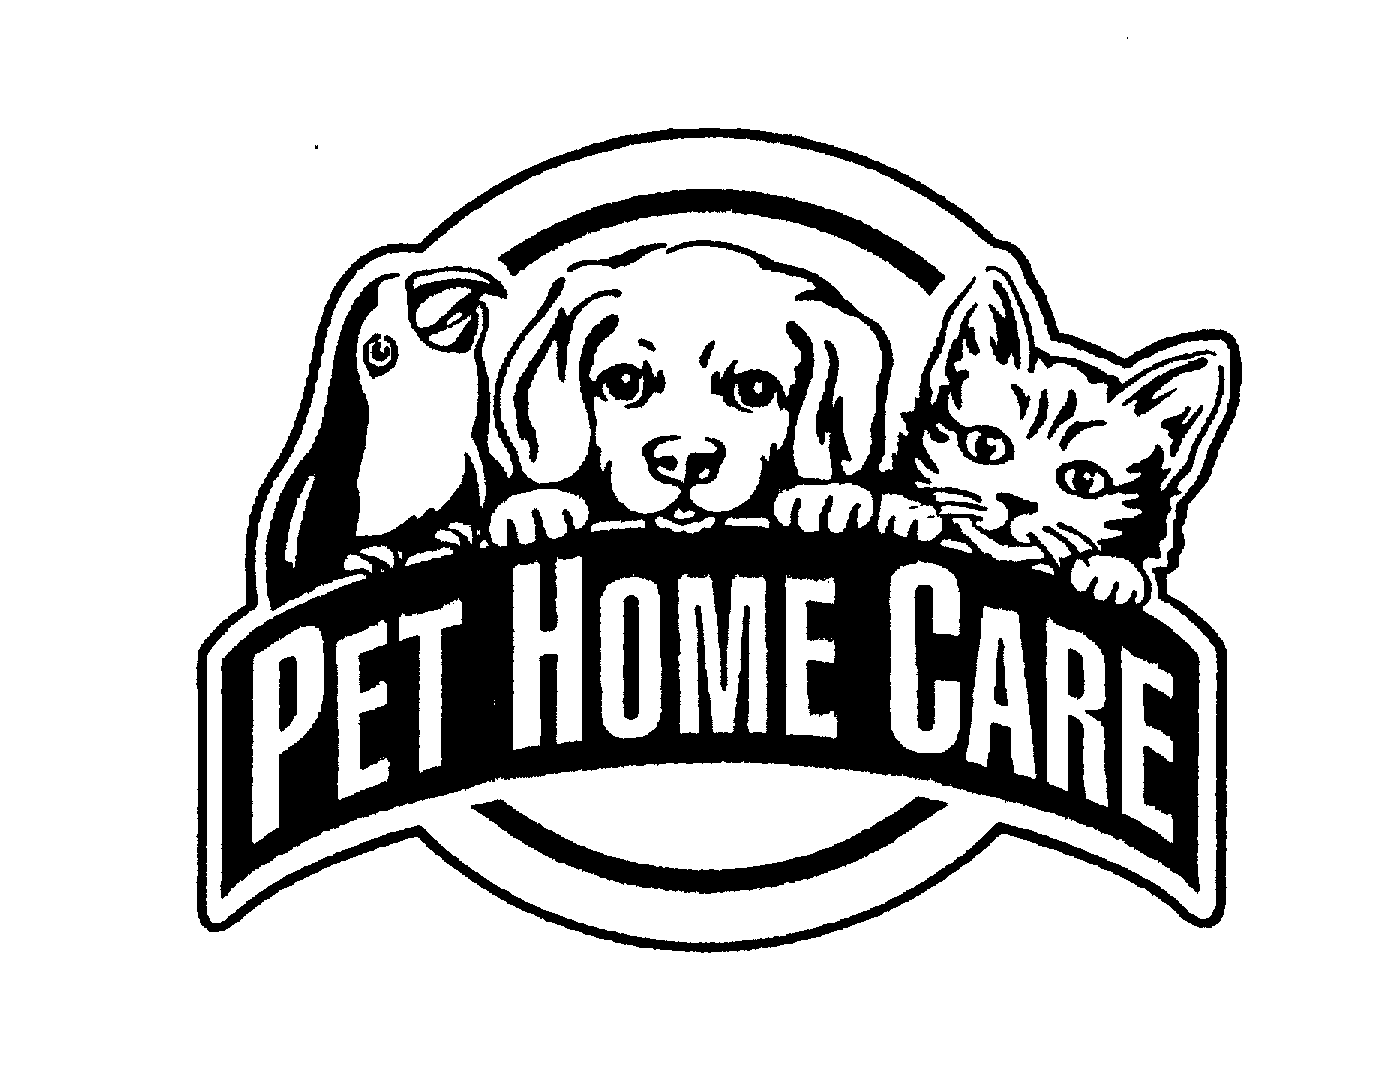  PET HOME CARE